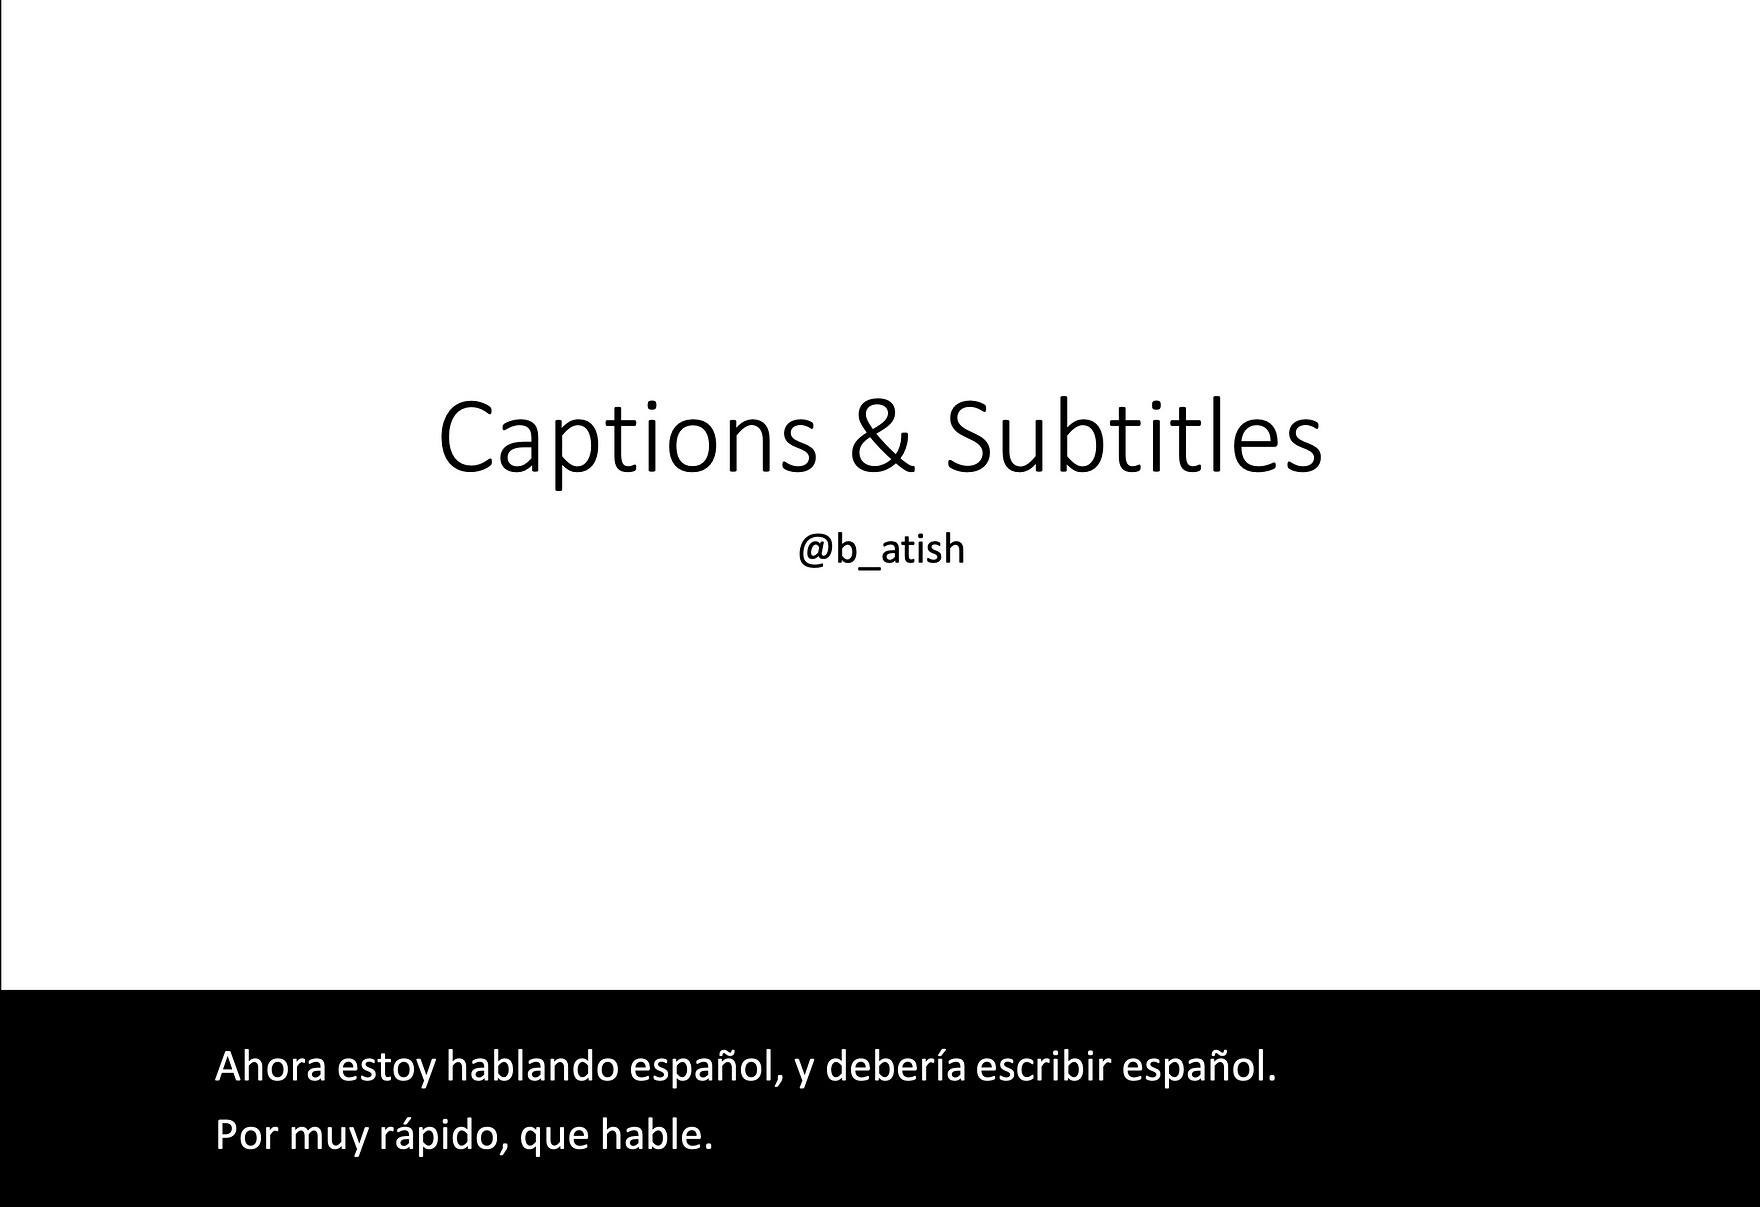 Beispiel für Spanische Bildunterschriften (gesprochene Spanisch und Spanische Untertiteln) in PowerPoint. 